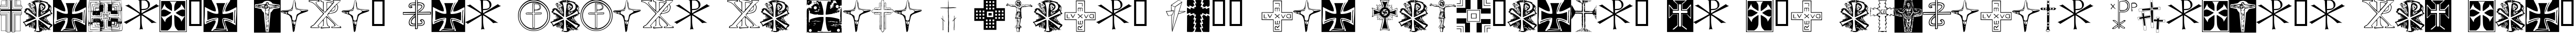 Пример написания шрифтом Christian Crosses II текста на испанском